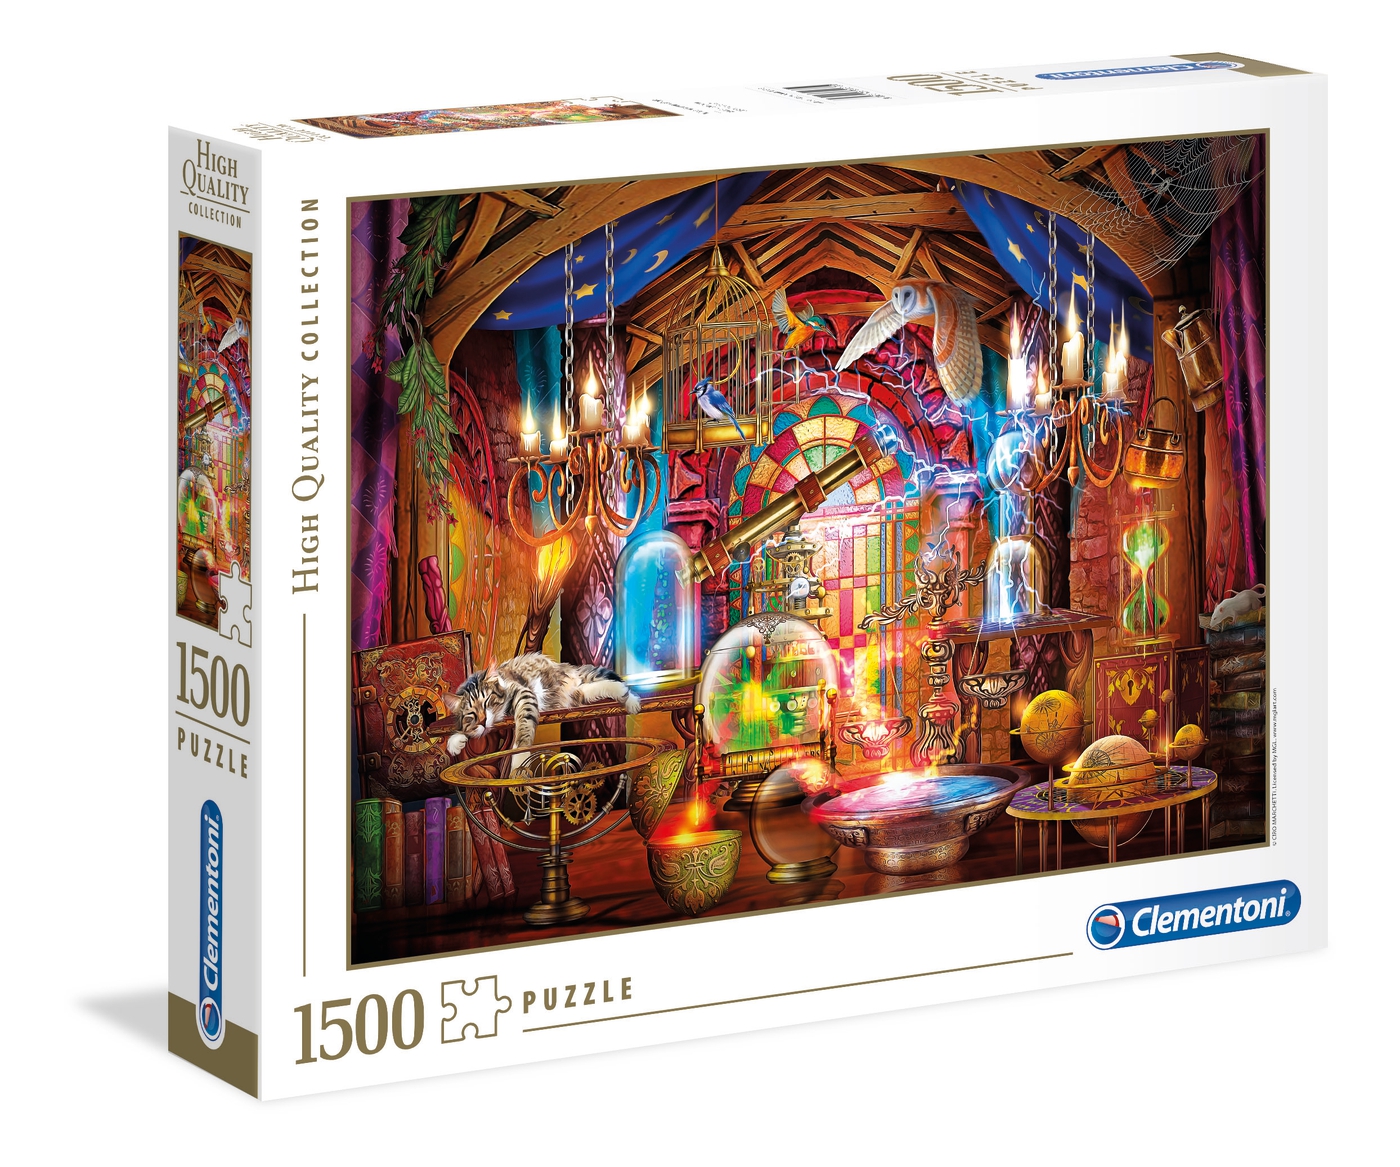 Clementoni Puzzle 1500 Pieces Wizard's Workshop 31813 